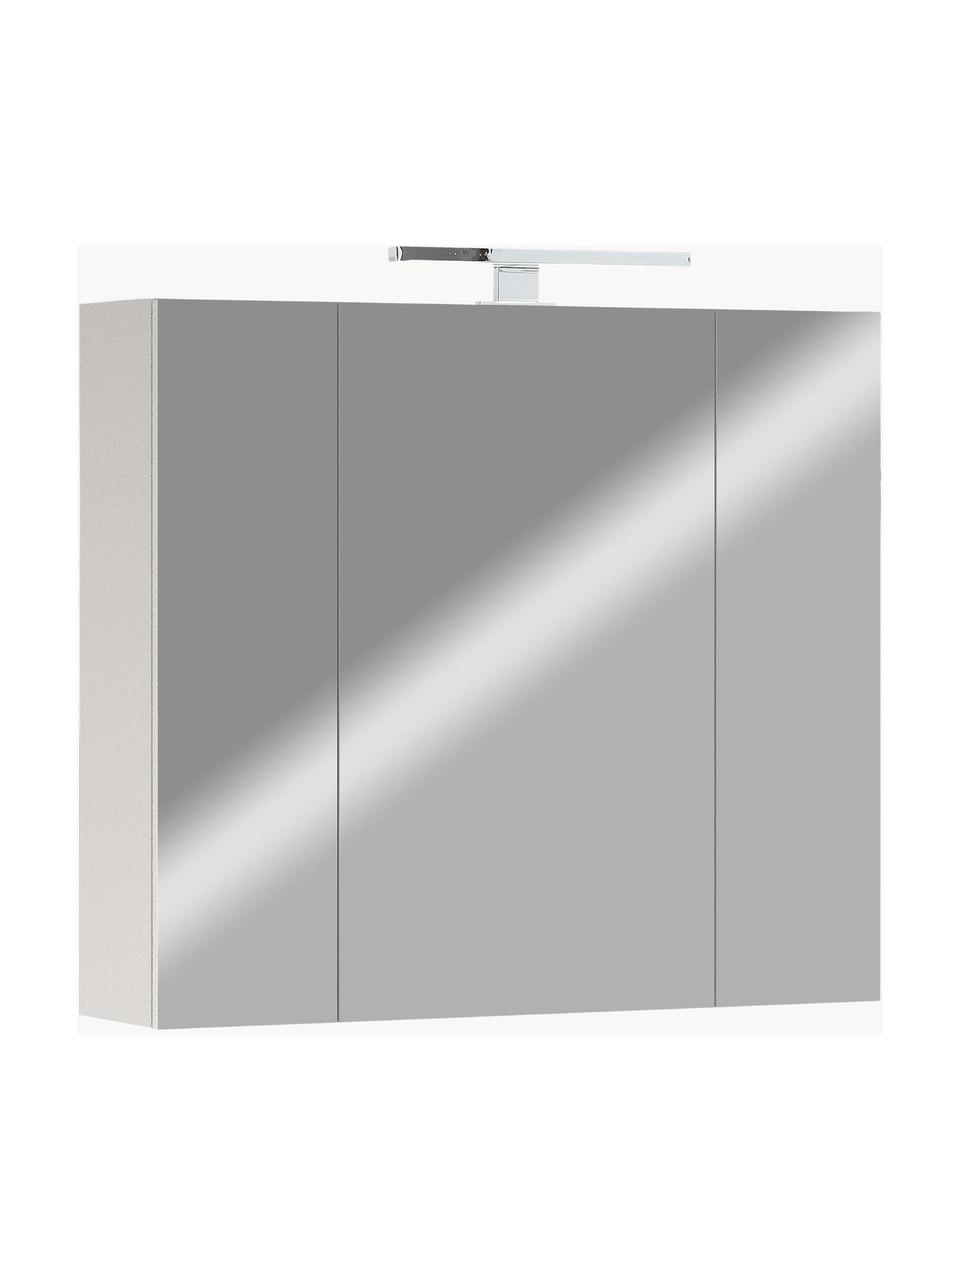 Bad-Spiegelschrank Elisa mit LED-Beleuchtung, Korpus: Spanplatte, melaminbeschi, Spiegelfläche: Spiegelglas, Off White, Silberfarben, B 76 x H 71 cm